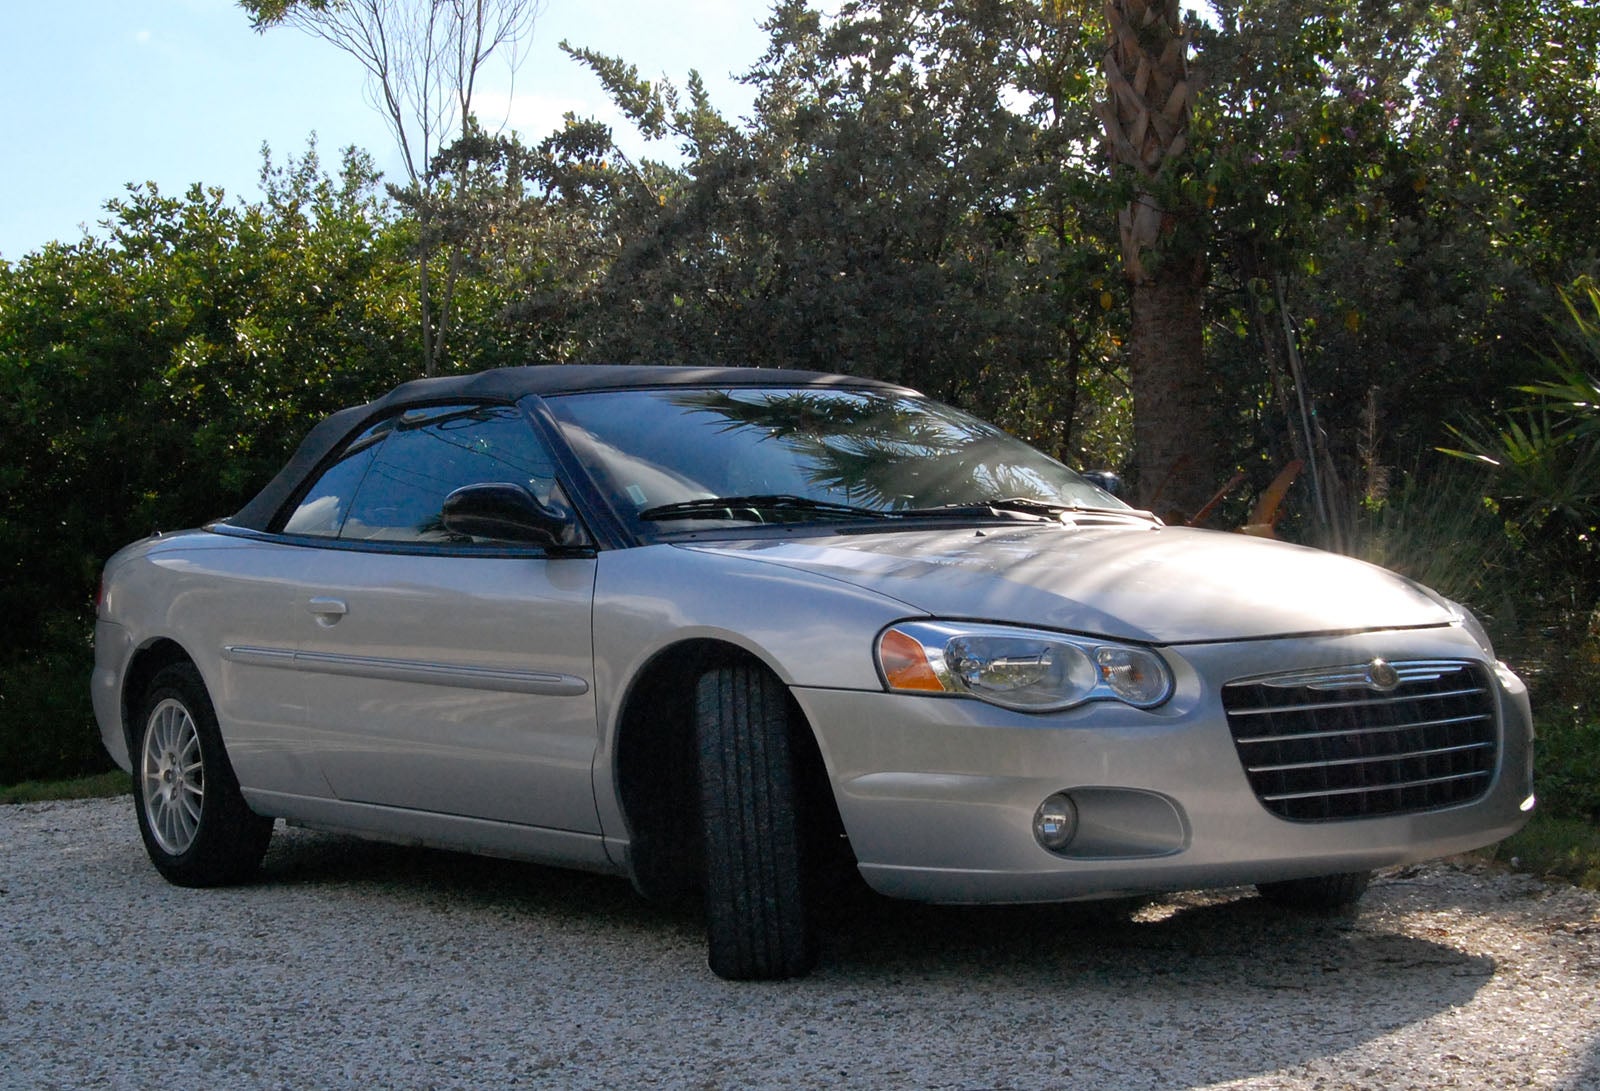 2005 Chrysler Sebring Overview CarGurus